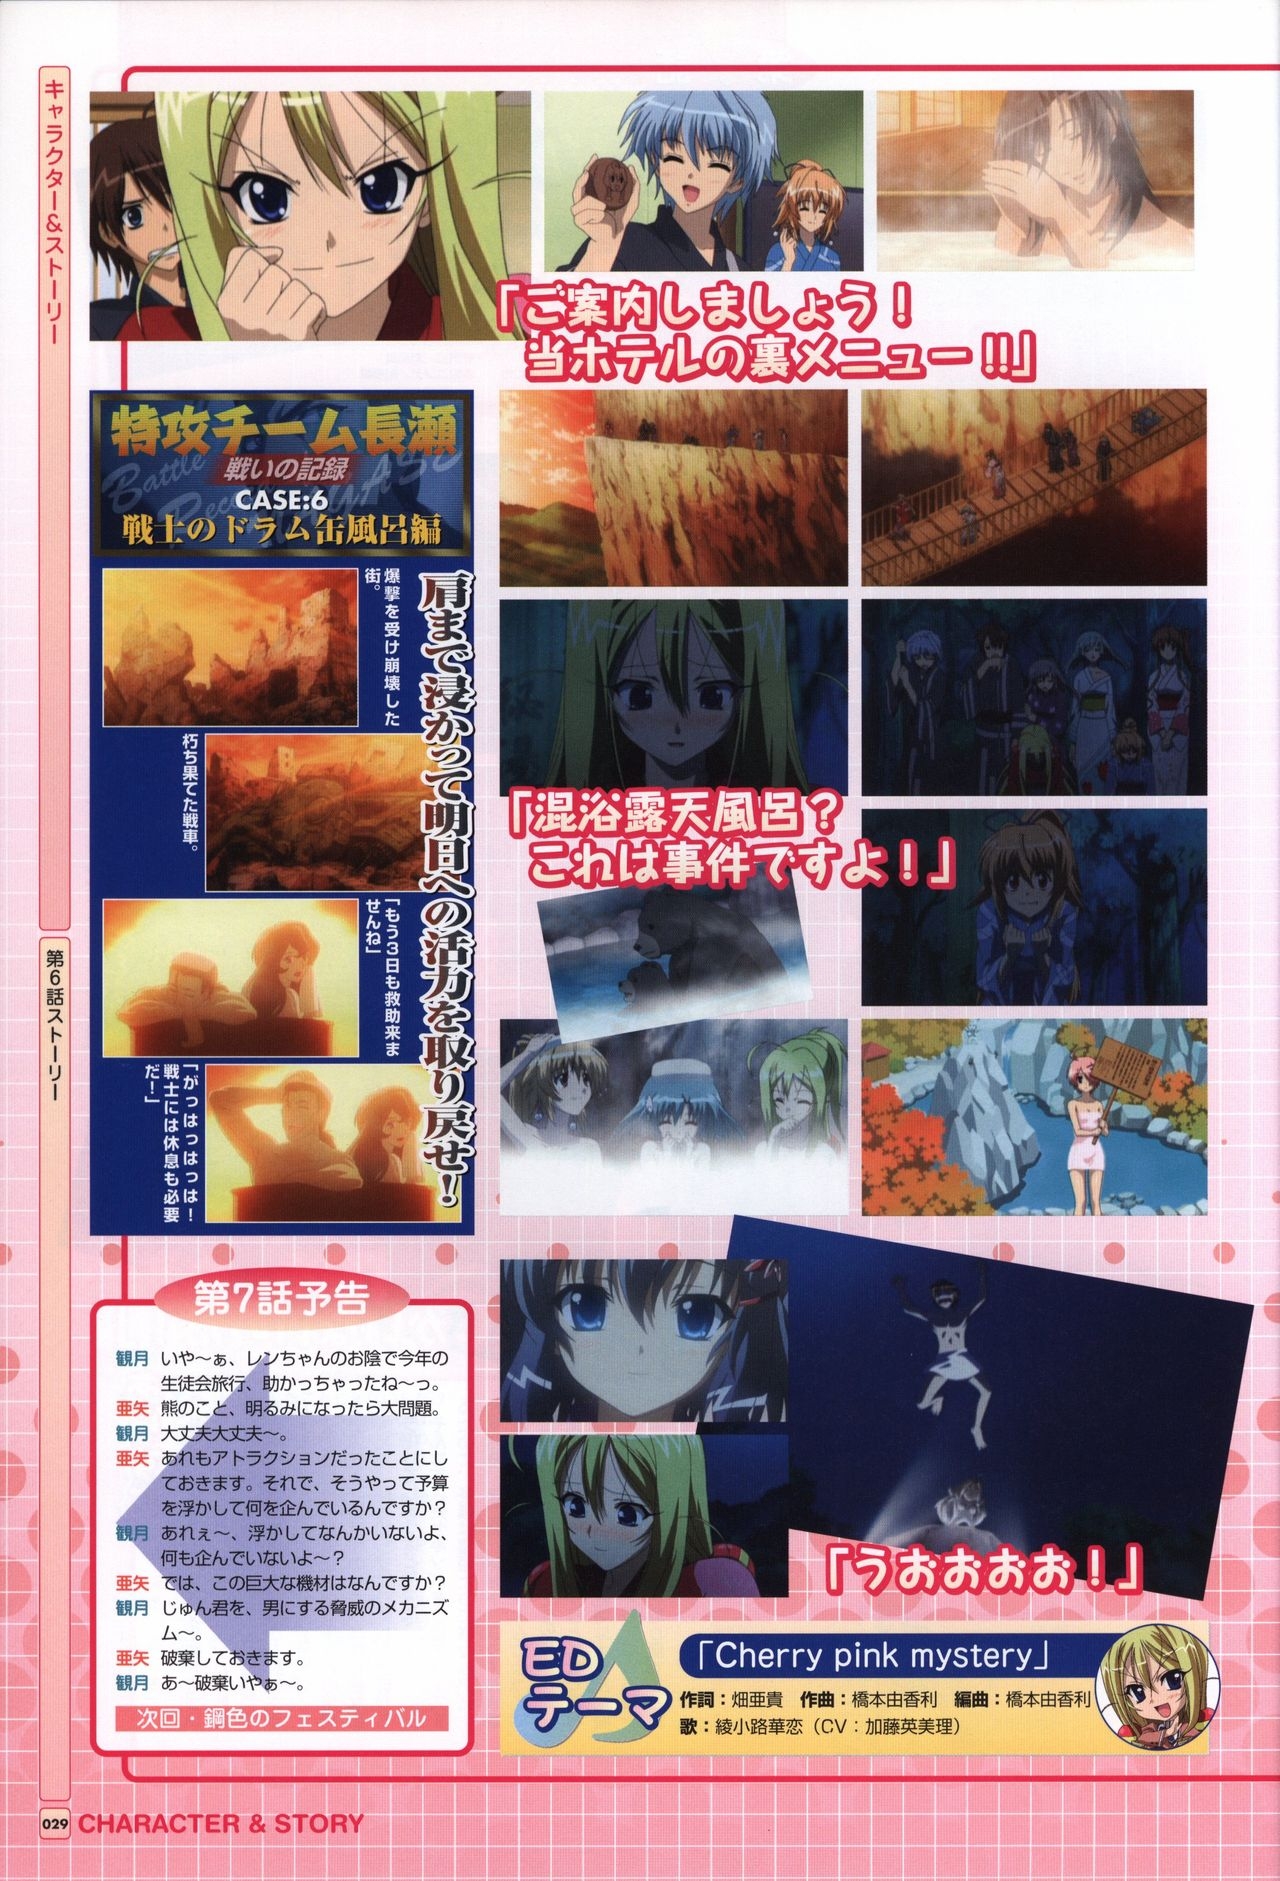 TV ANIME Akaneiro ni Somaru Saka Visual Guide Book 29